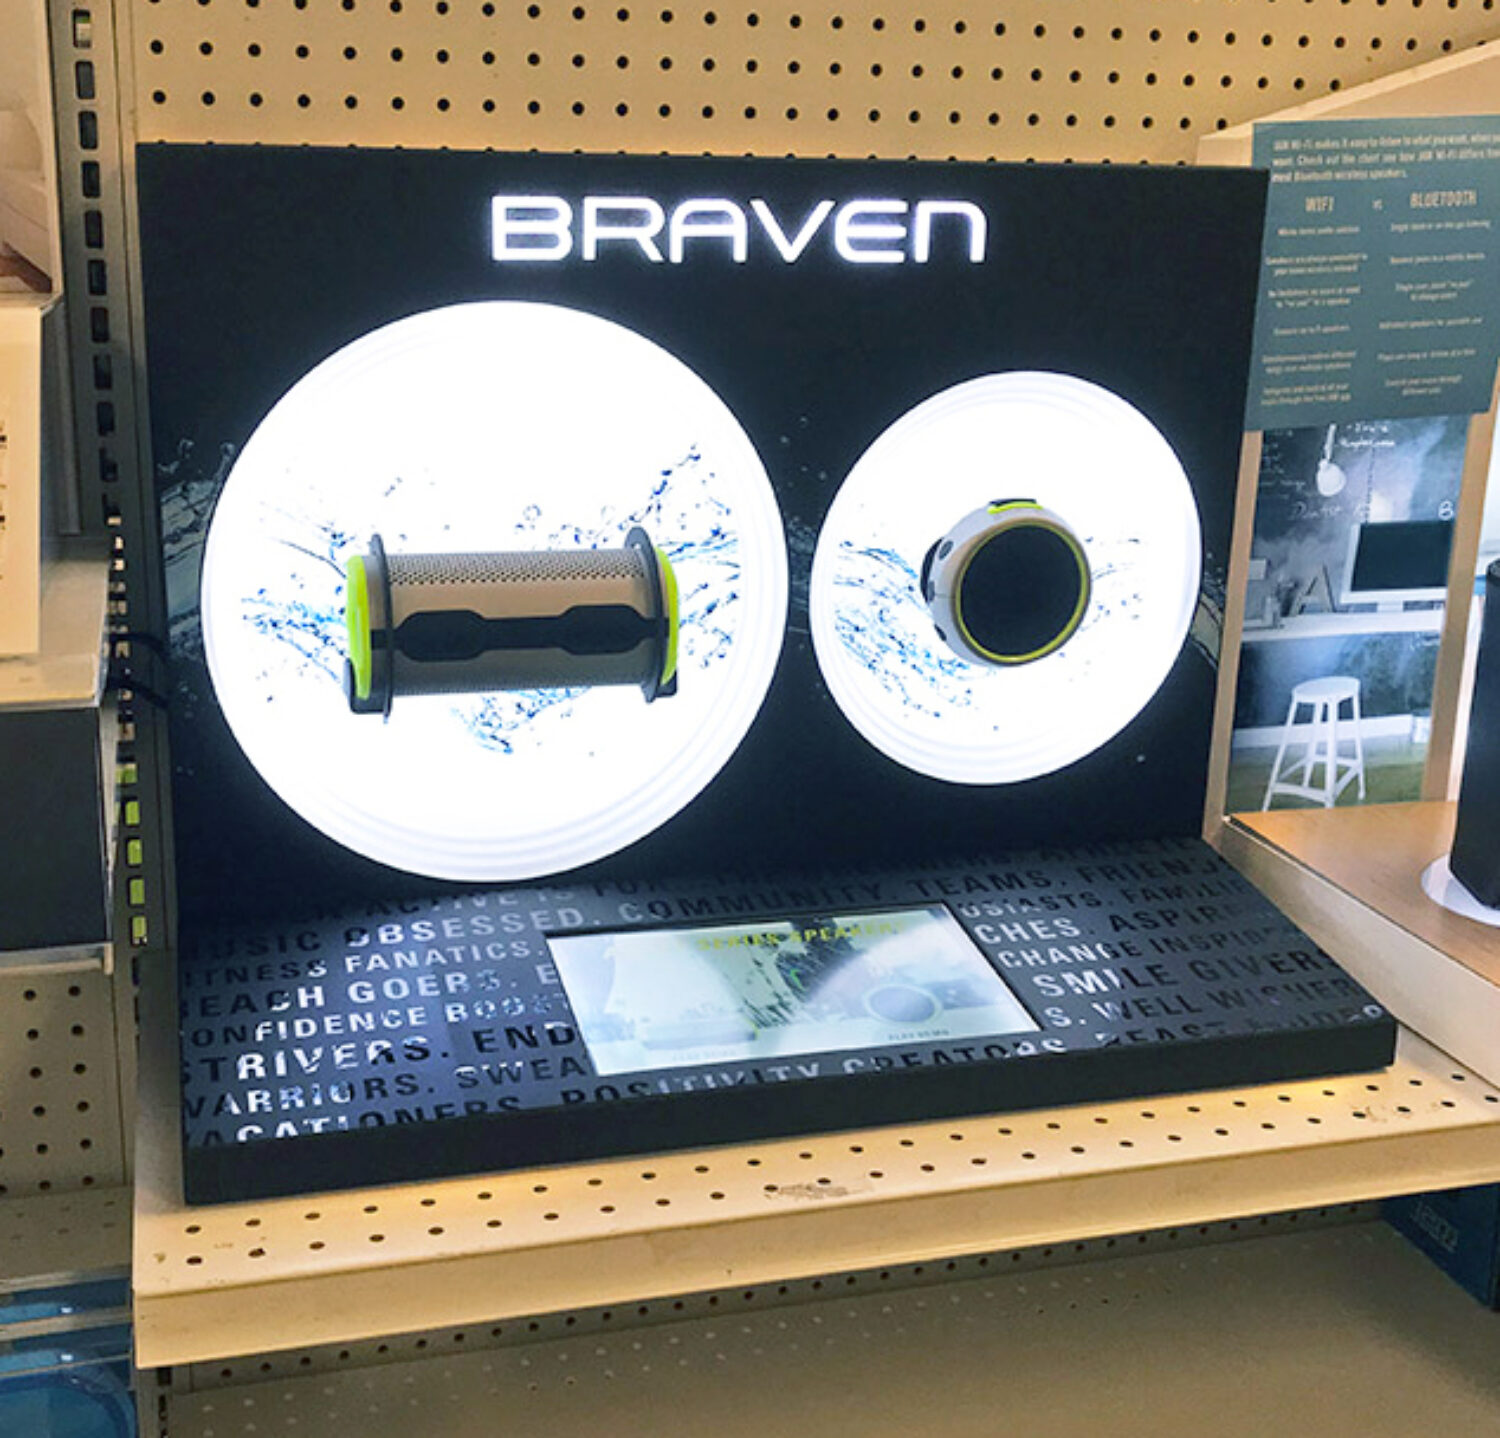 countertop speaker display at retail